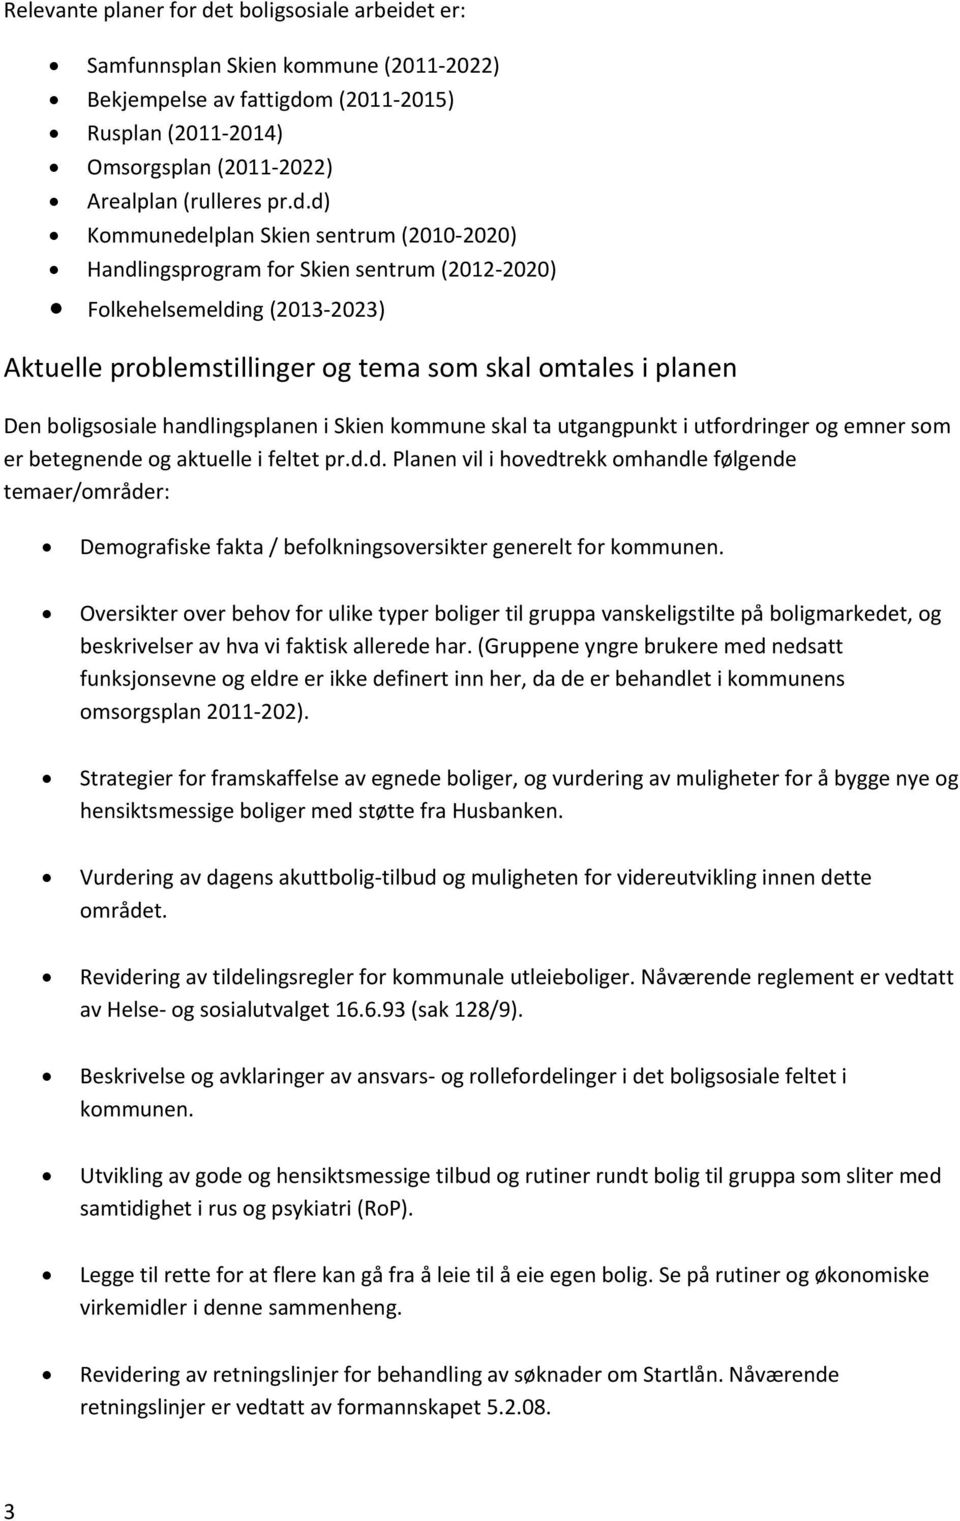 t er: Samfunnsplan Skien kommune (2011 2022) Bekjempelse av fattigdo